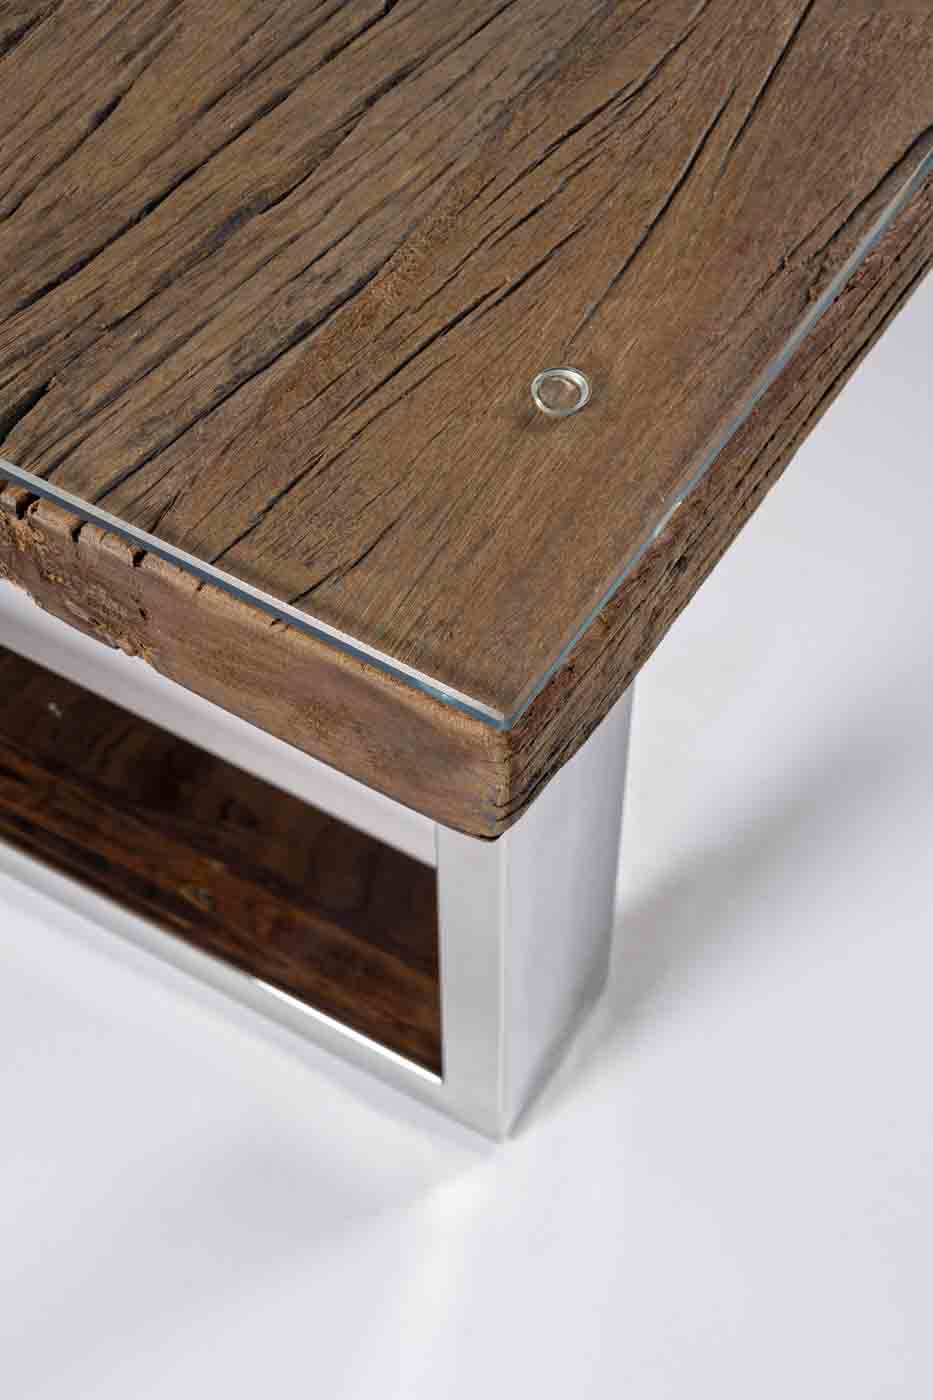 Stilvoller Couchtisch Stanton der Marke Bizotto gefertigt aus recyceltem Holz verfügt über eine Glasplatte. Aufgrund dessen ist jeder Tisch von der Maserung ein Unikat.